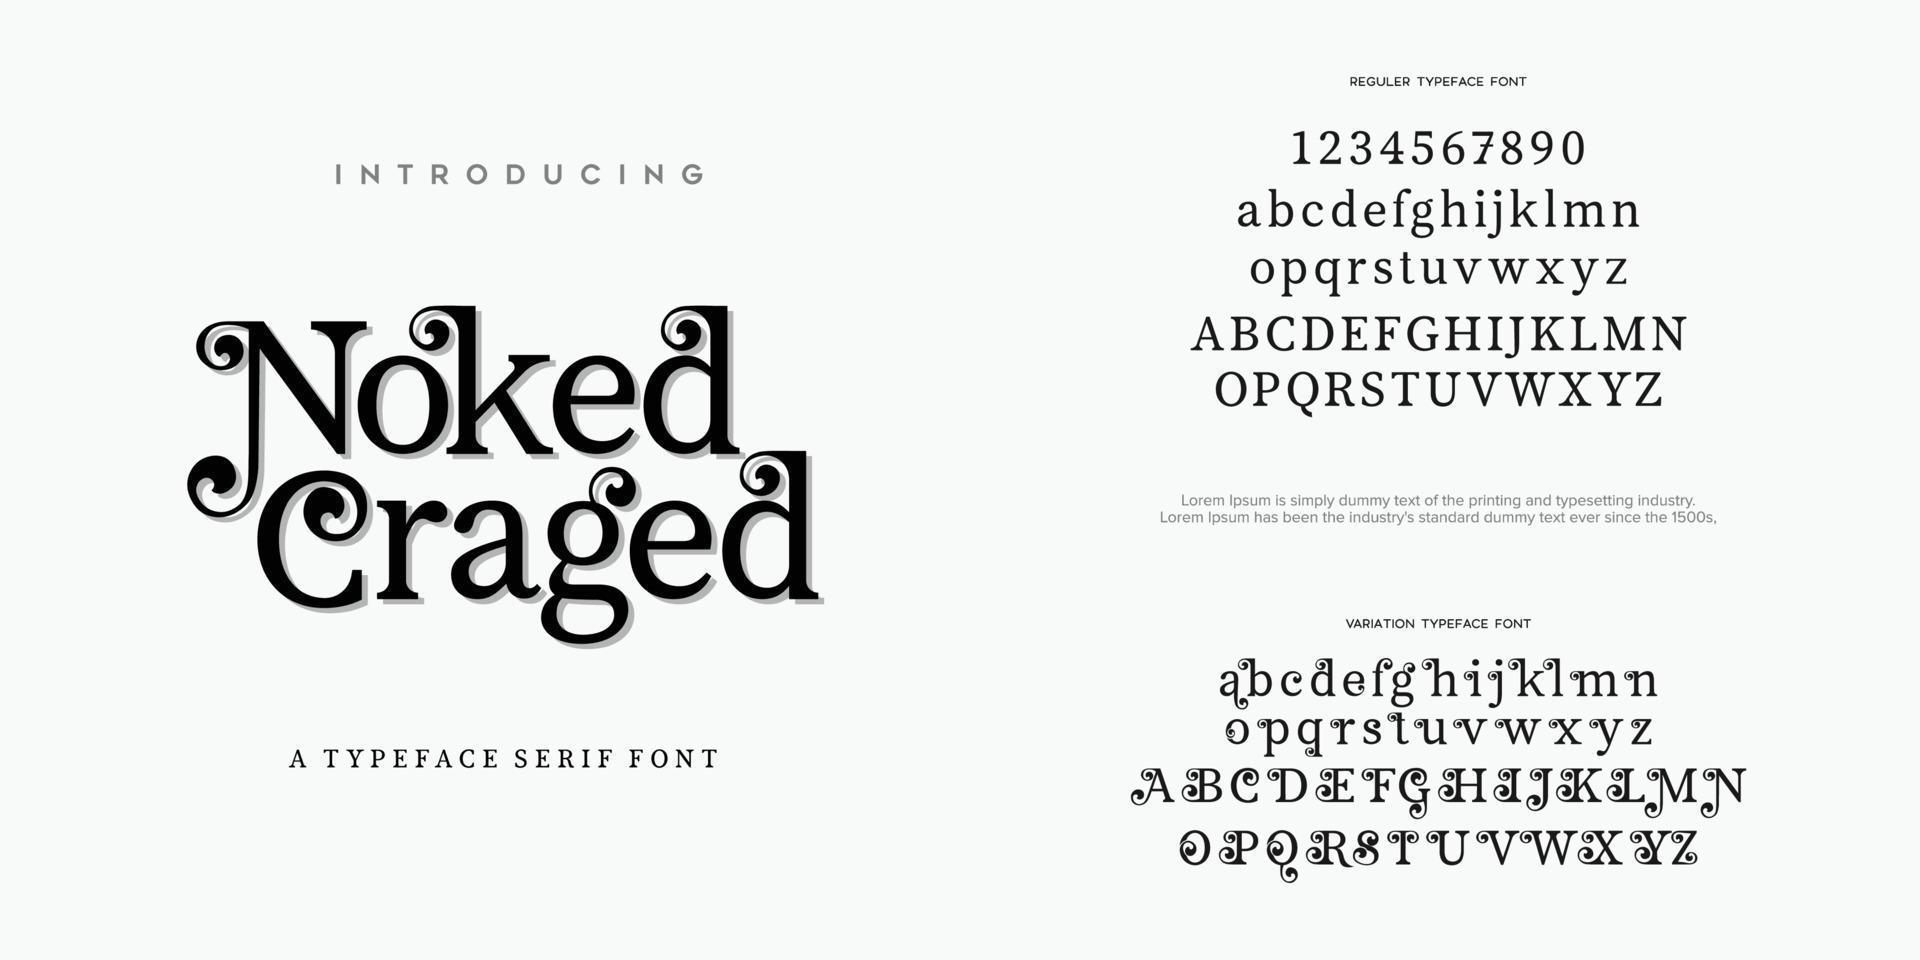 noked craged abstrakt mode teckensnitt alfabetet. minimal modern urban typsnitt för logotyp, varumärke etc. typografi typsnitt versaler gemener och nummer. vektor illustration